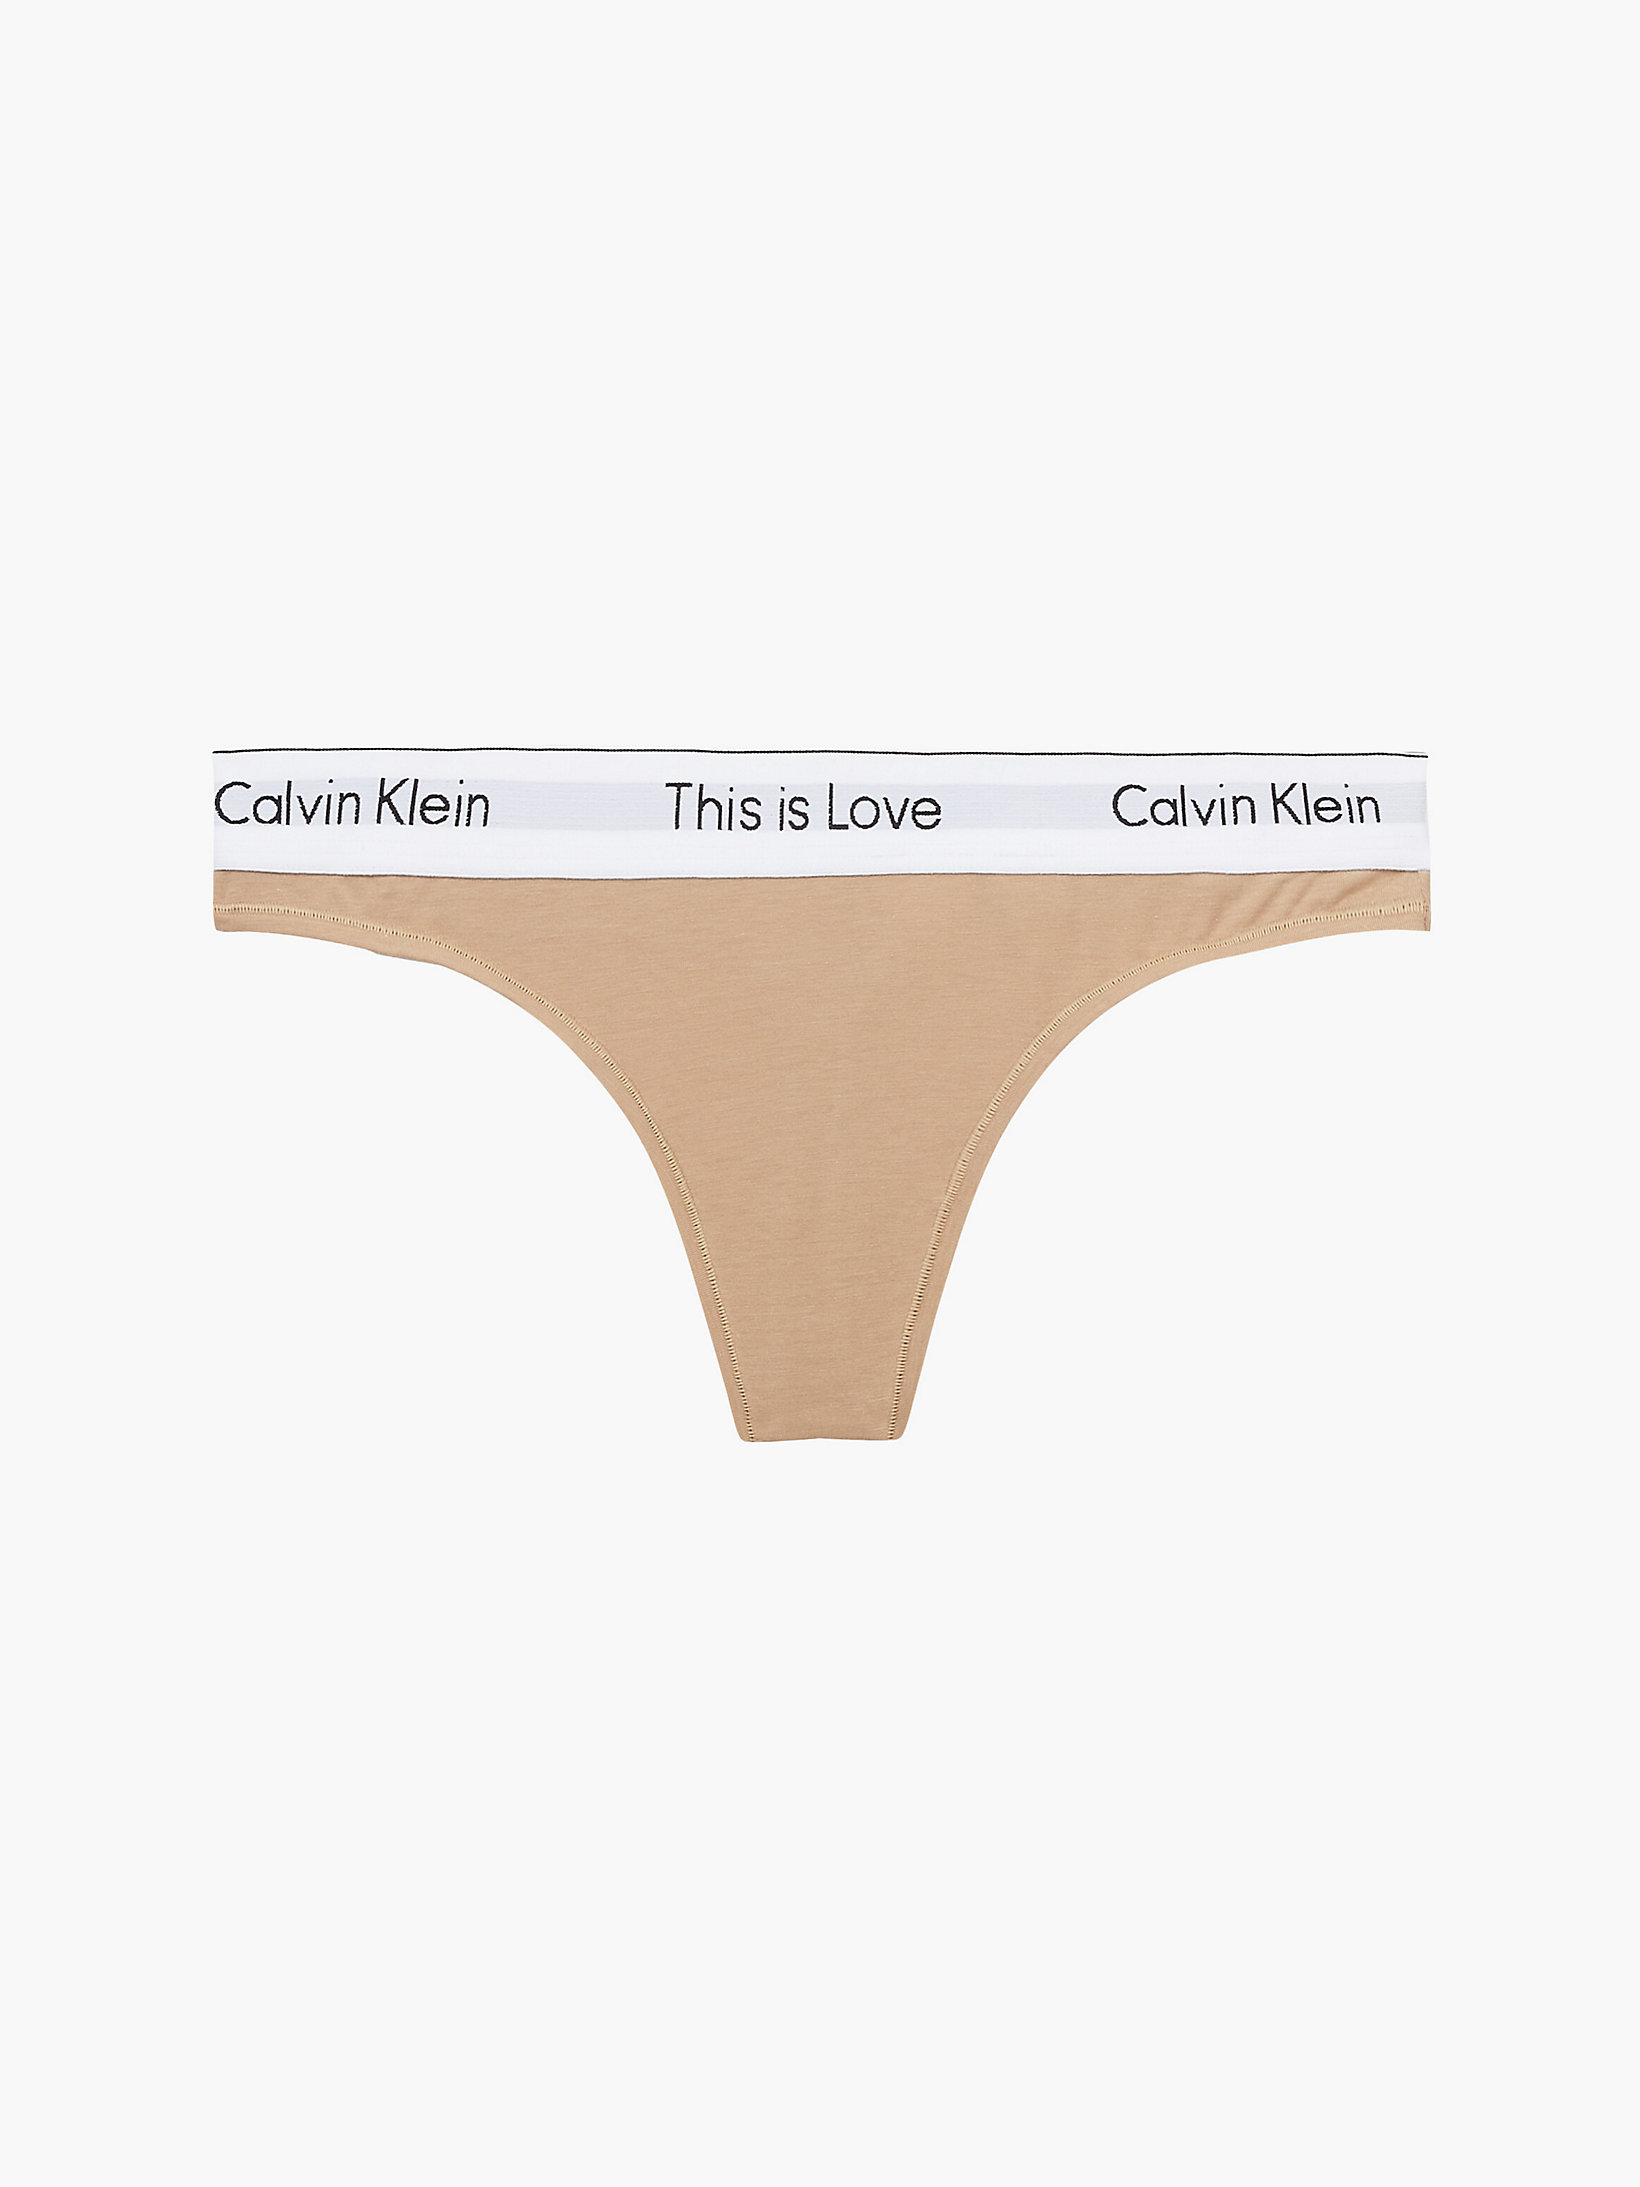 Travertine Thong - Pride undefined women Calvin Klein